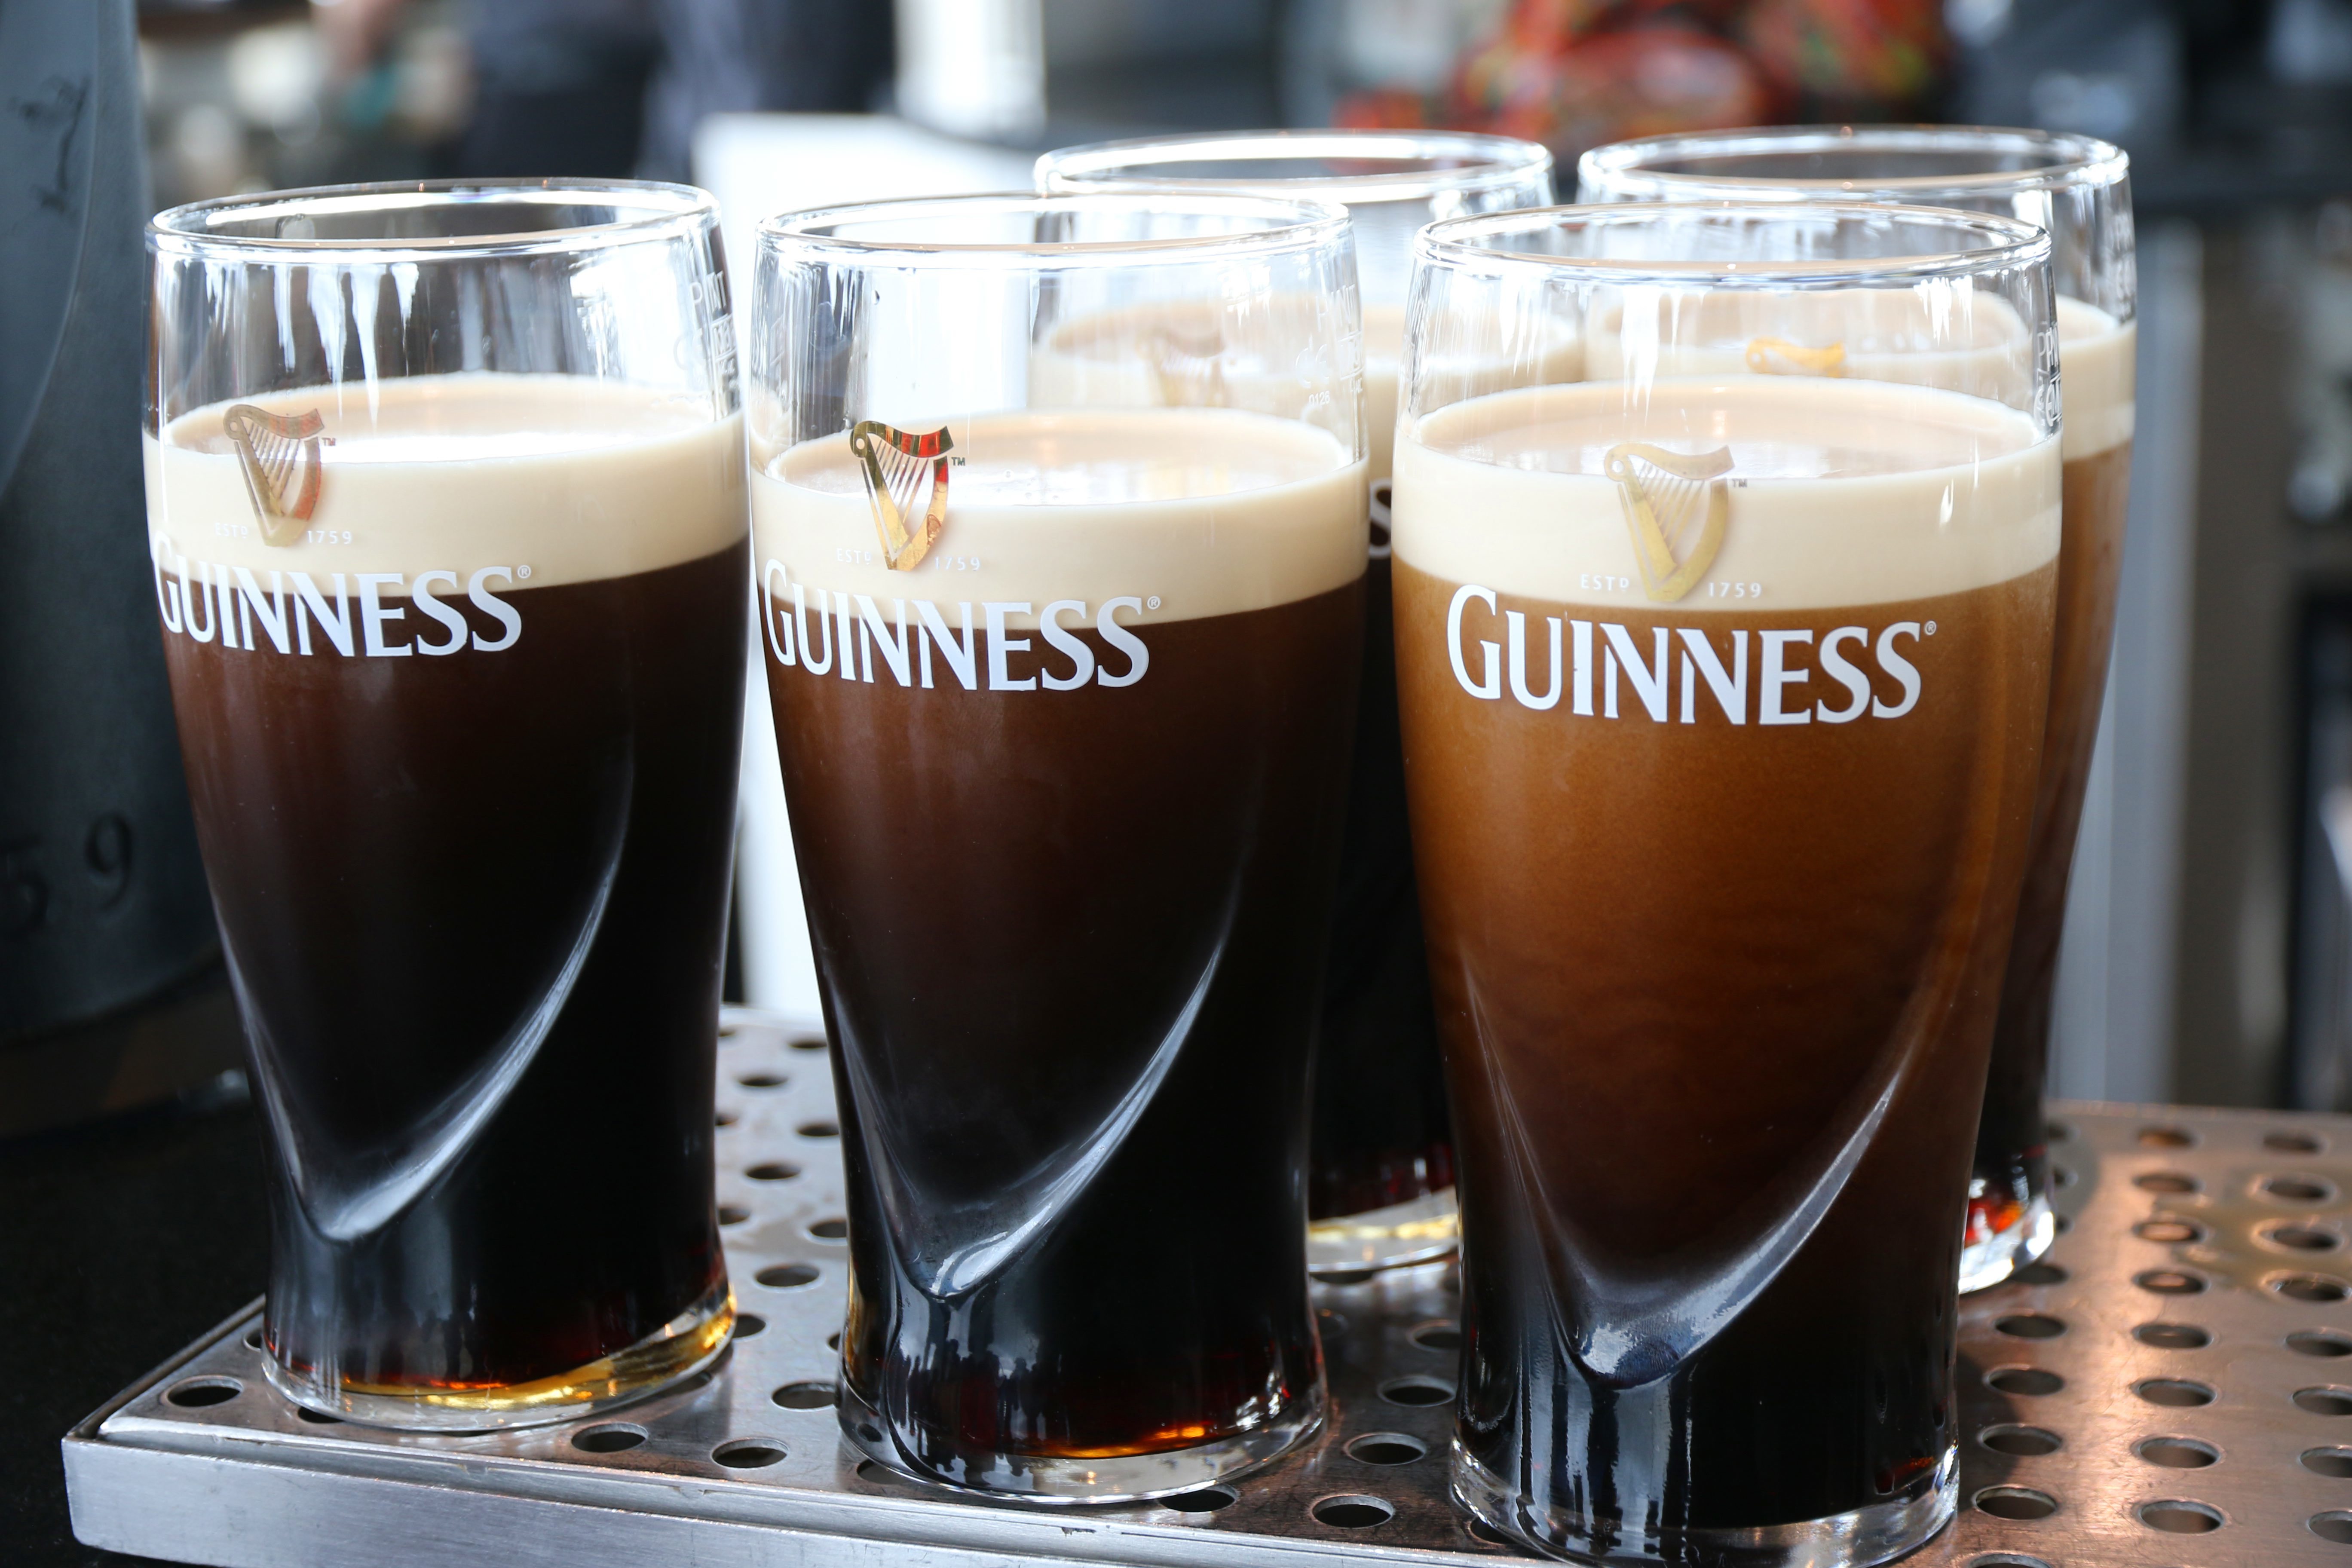 Как пить пиво гиннес. Бокал Guinness 0.25. Стакан Guinness. Guinness пиво бокал.